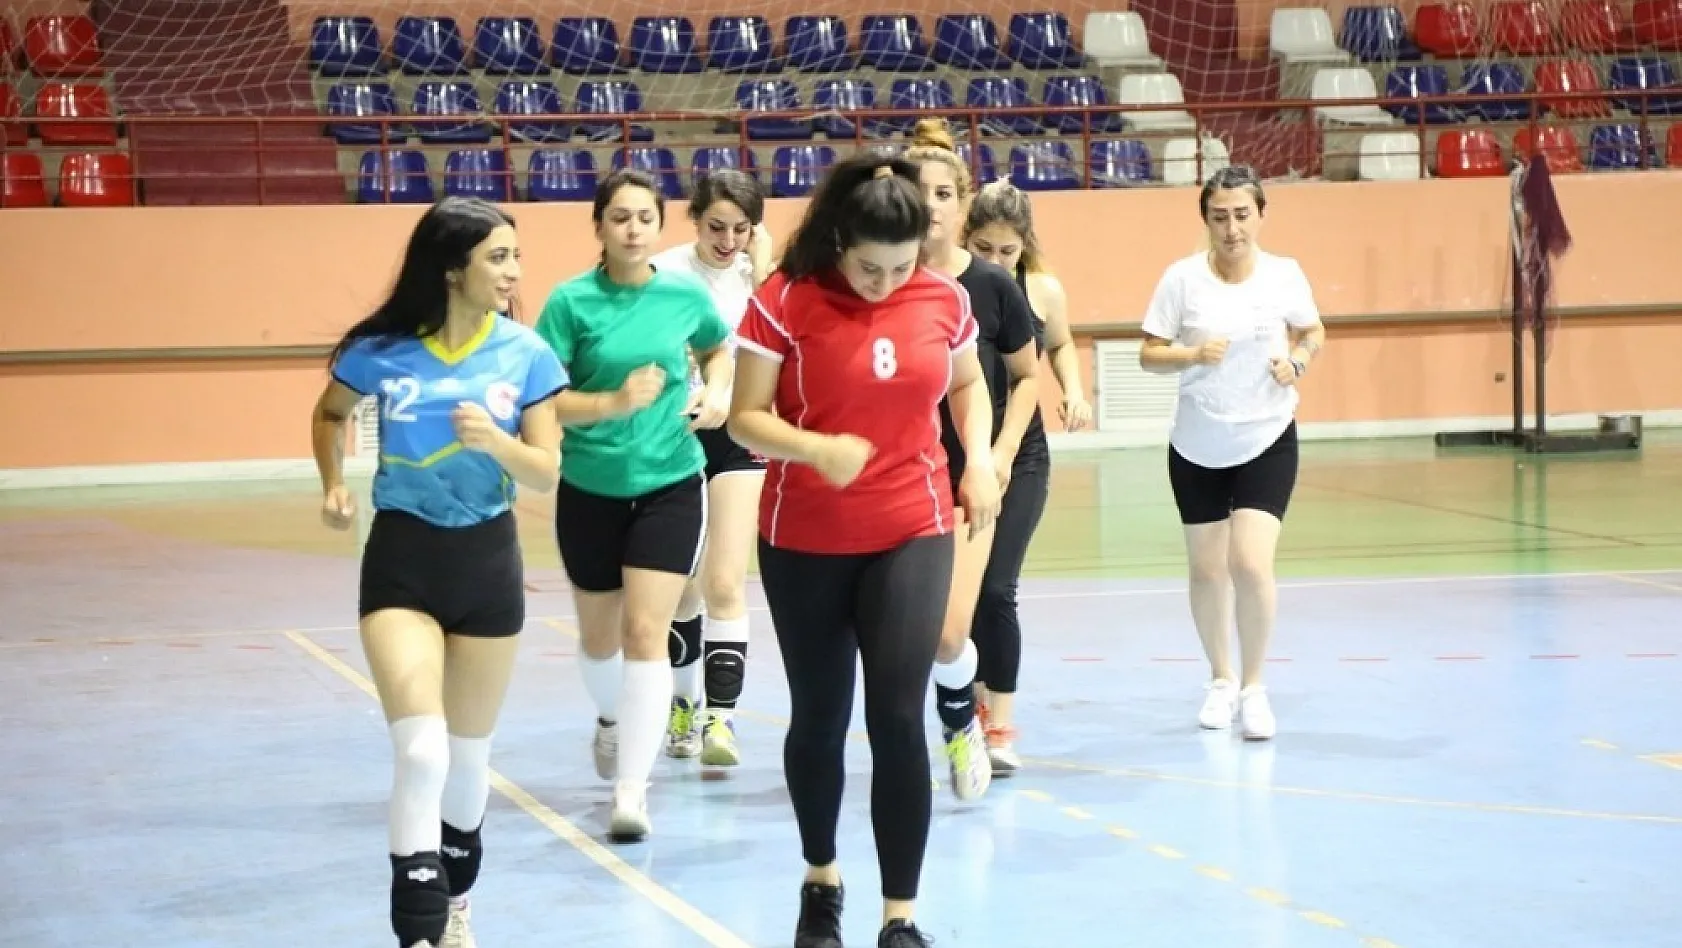 Tunceli'de kadın voleybol takımı destek bekliyor 